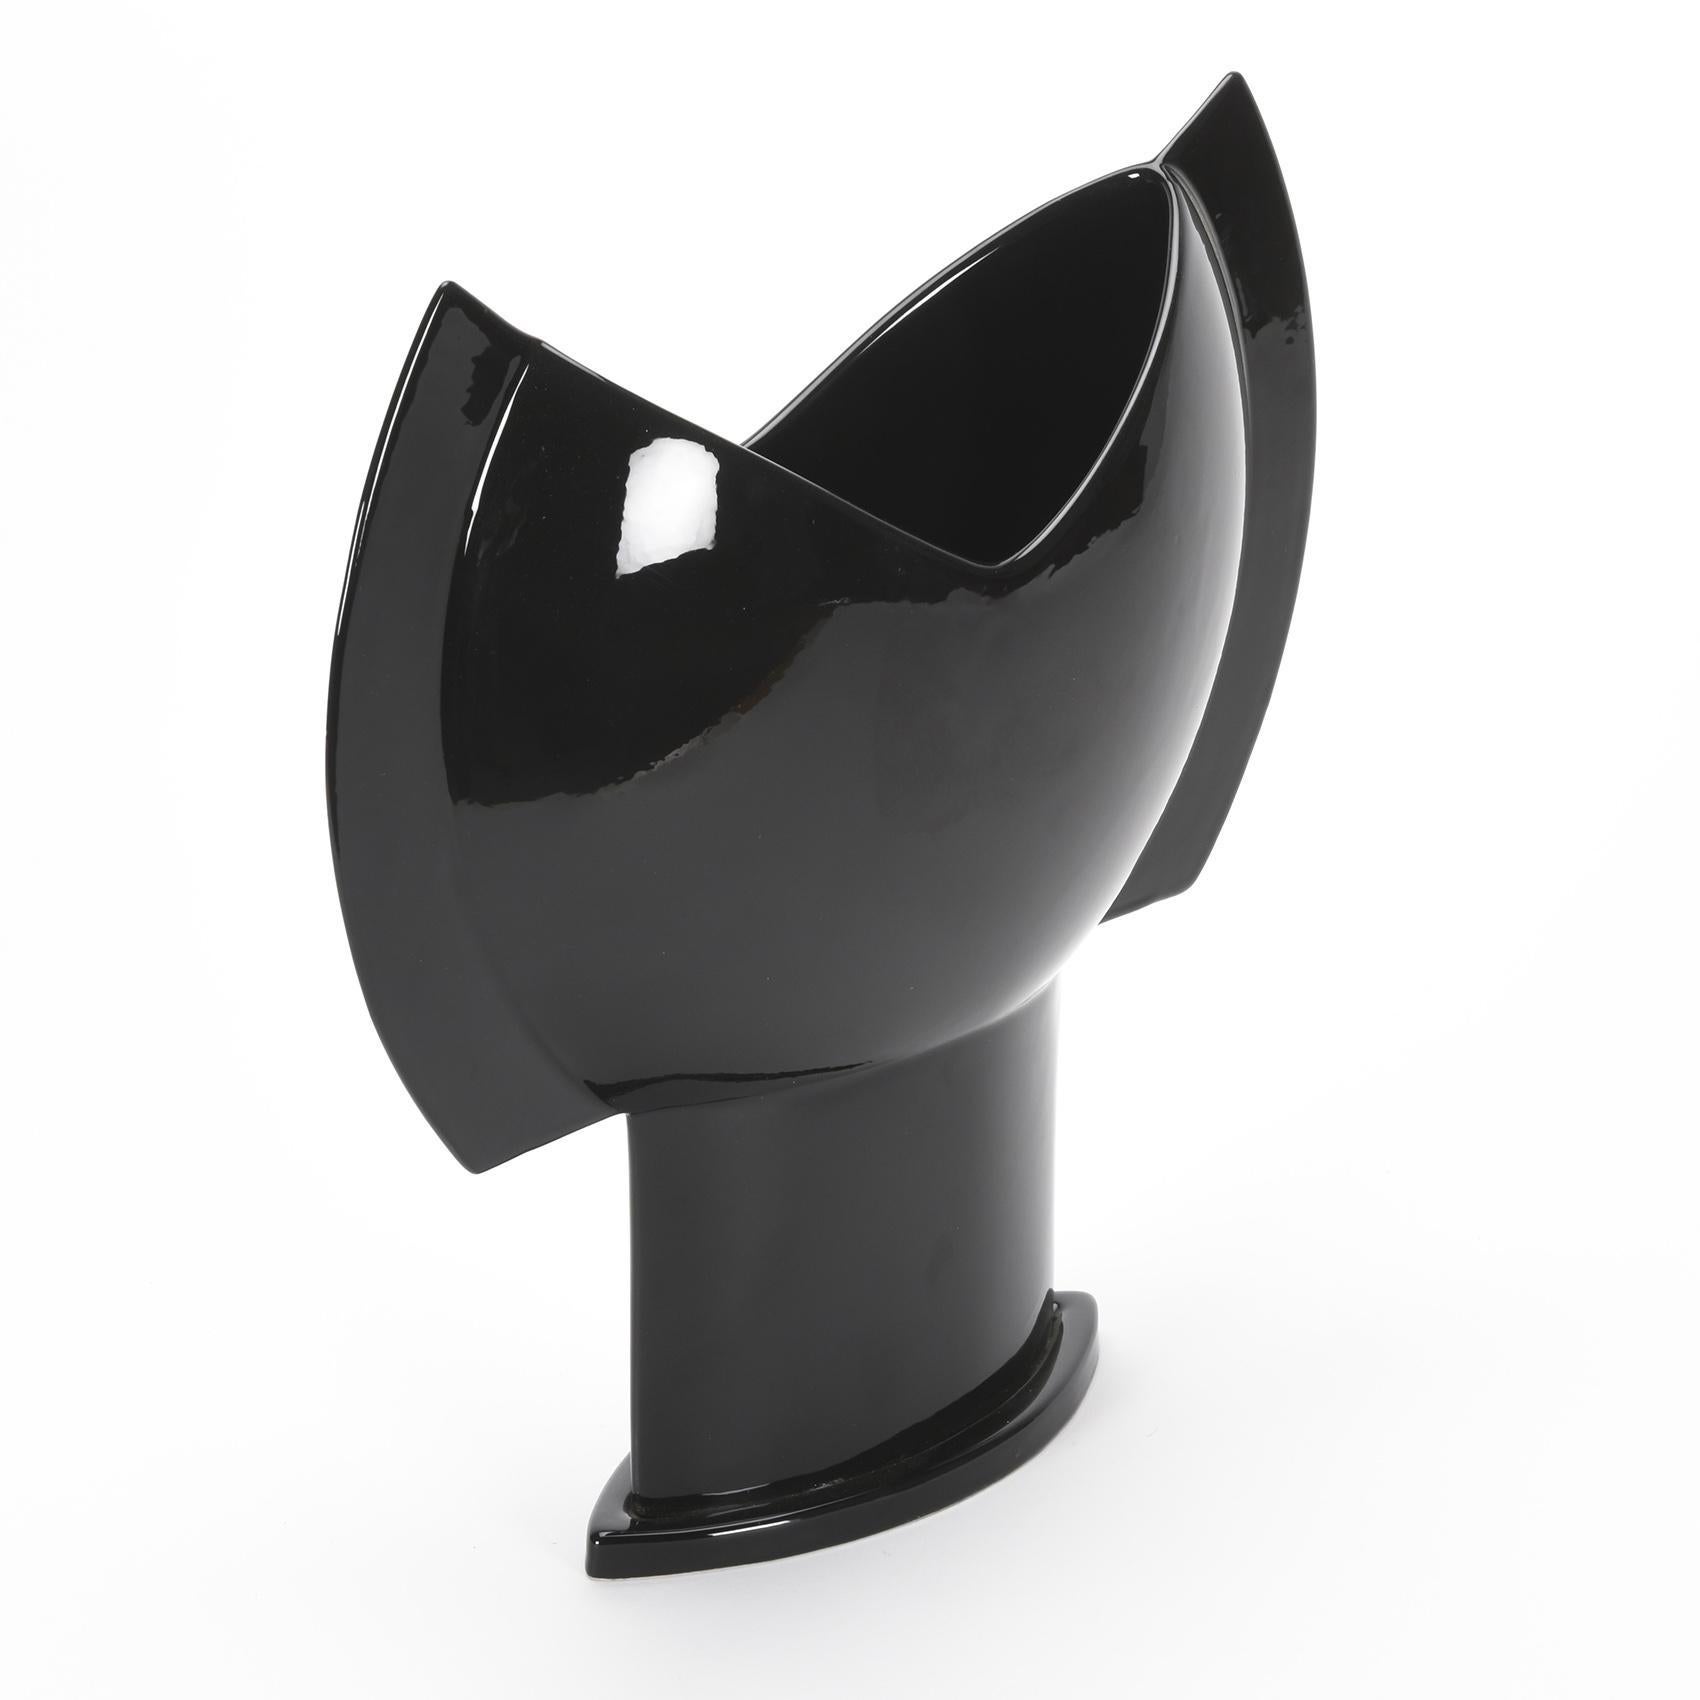 Prototype du vase Costrutto, de Lino Sabattini, en céramique émaillée noire.

Signé par l'artiste.

Prototype pour la production de Superego, Asti.

Date de création : 2008.